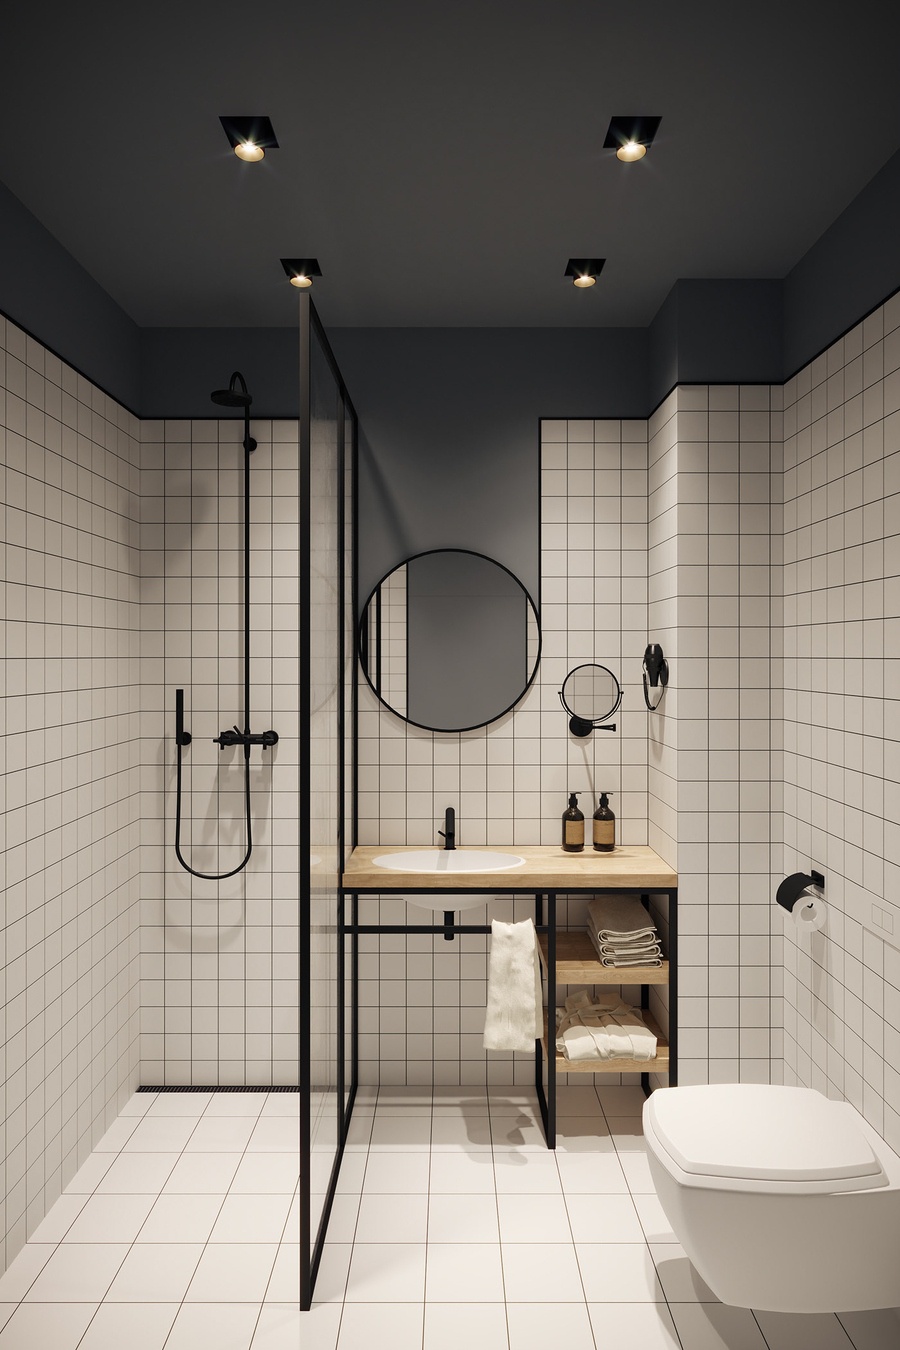 Decox Design mang đến cho bạn những mẫu gạch ốp nhà tắm độc đáo, tinh tế và sáng tạo. Thiết kế đa dạng từ gạch vuông, xếp hình, tạo hình và kết hợp các chất liệu khác nhau, tạo nên một không gian phòng tắm đầy nghệ thuật. Hãy để Decox Design giúp bạn tạo bước đột phá trong thiết kế nội thất.